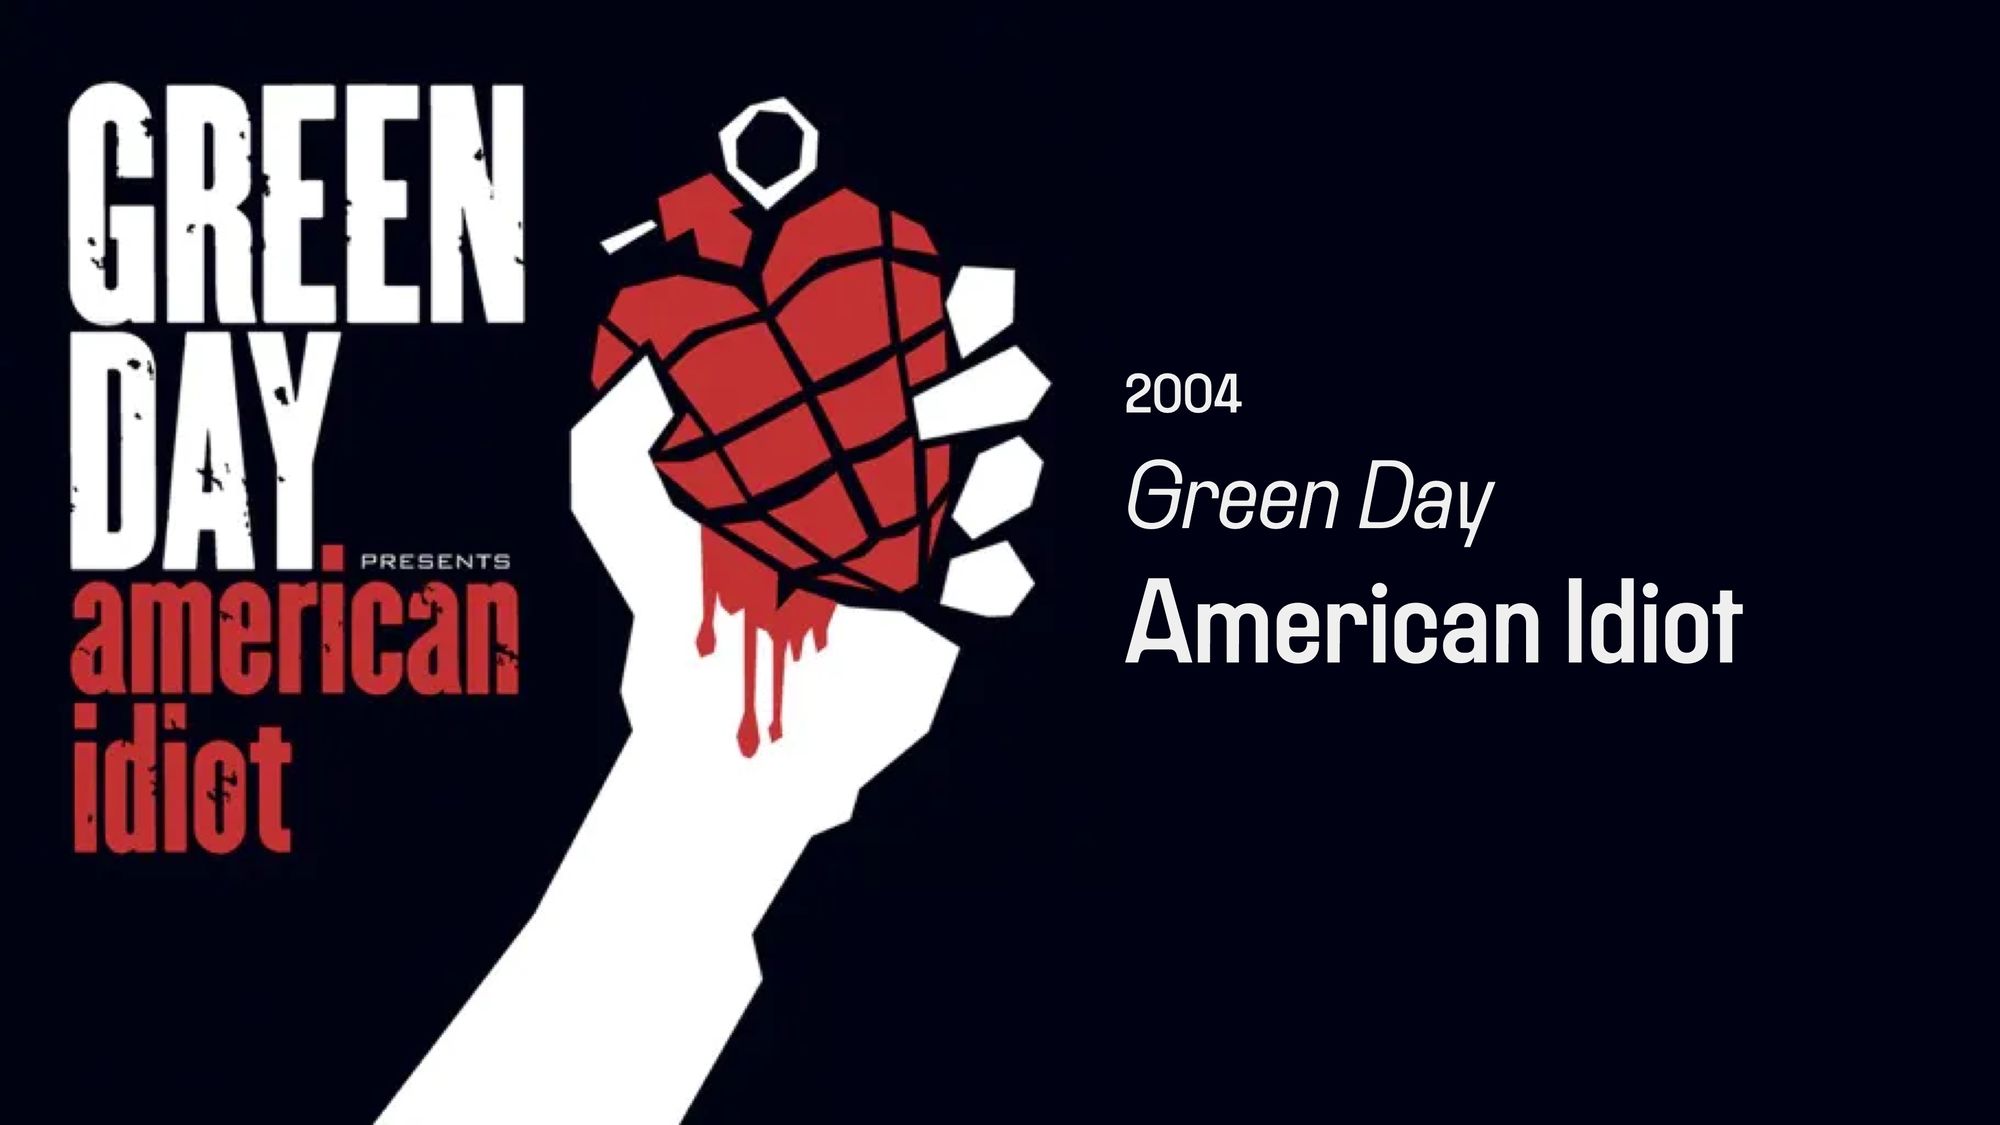 Пусть бежит по венам. Green Day. American Idiot. Green Day 2004 American Idiot. Green Day American Idiot табы. Game American Idiot.